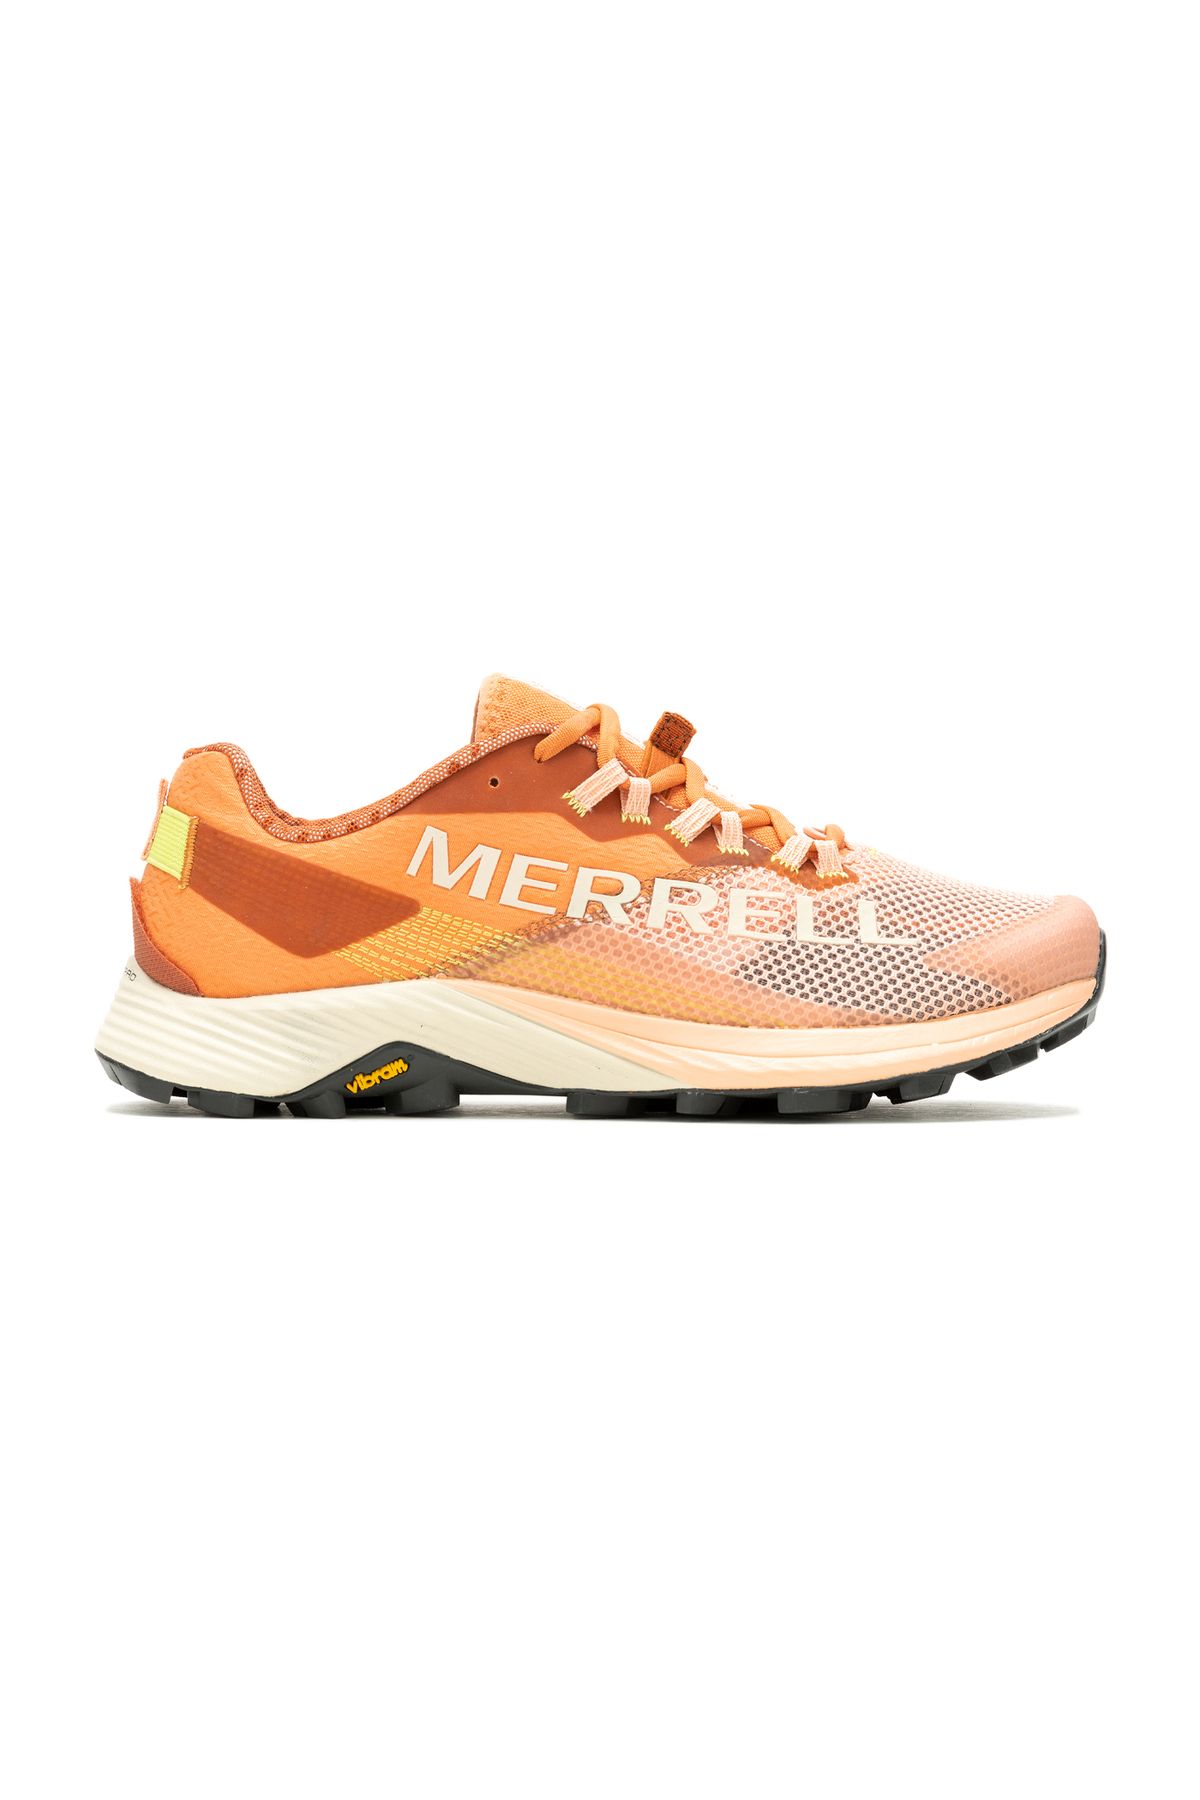 Merrell Mtl Long Sky 2 Kadın Patika Koşu Ayakkabısı